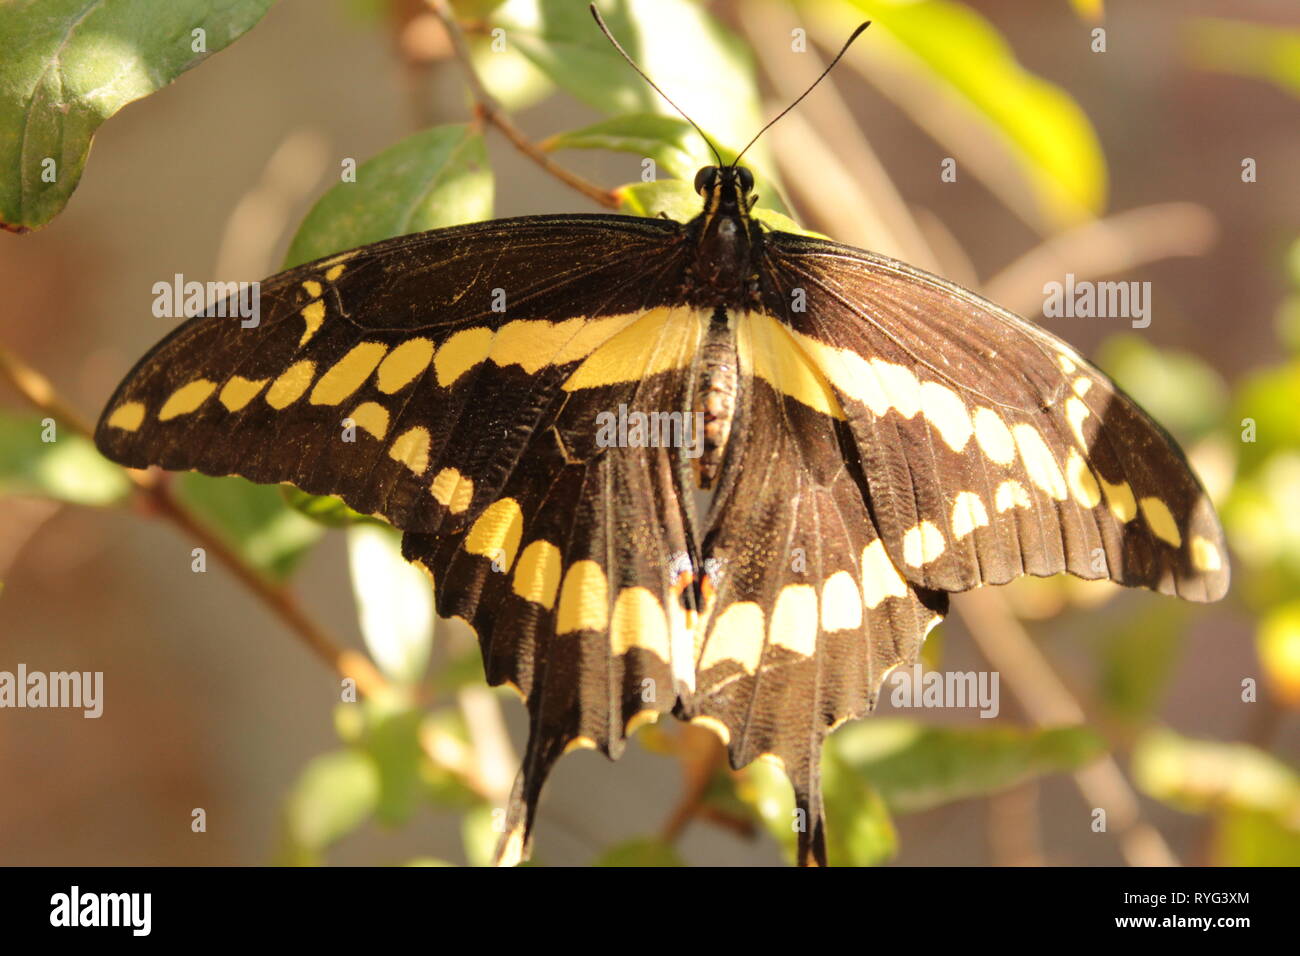 close up de mariposa negra con amarillo pasando en un arbol de  mi jardín, foto tomada con un lente 18-55 mm marca canon a plena luz del día Stock Photo